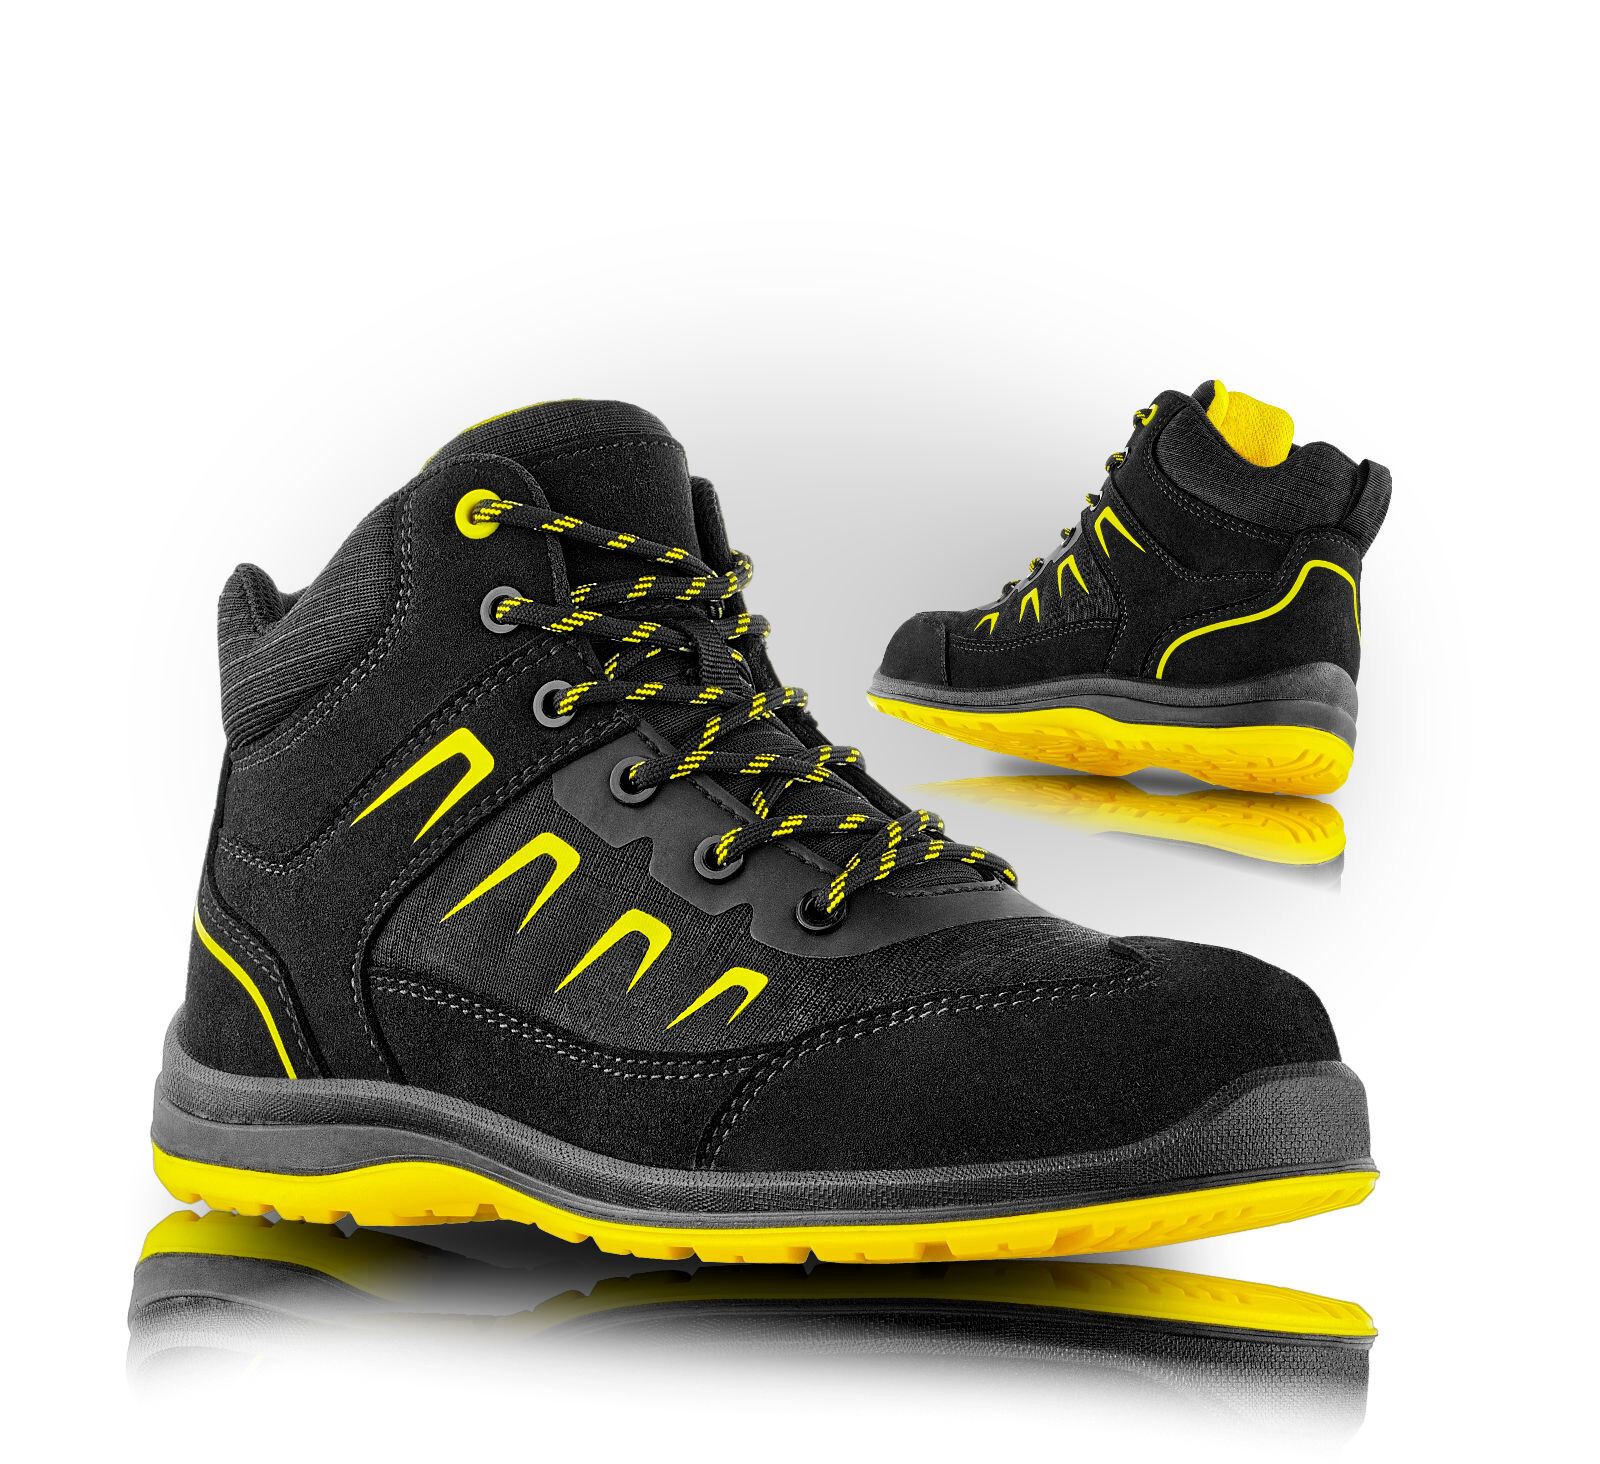 Pracovná členková obuv VM Rhodos ESD O2 FO SRC - veľkosť: 41, farba: čierna/žltá